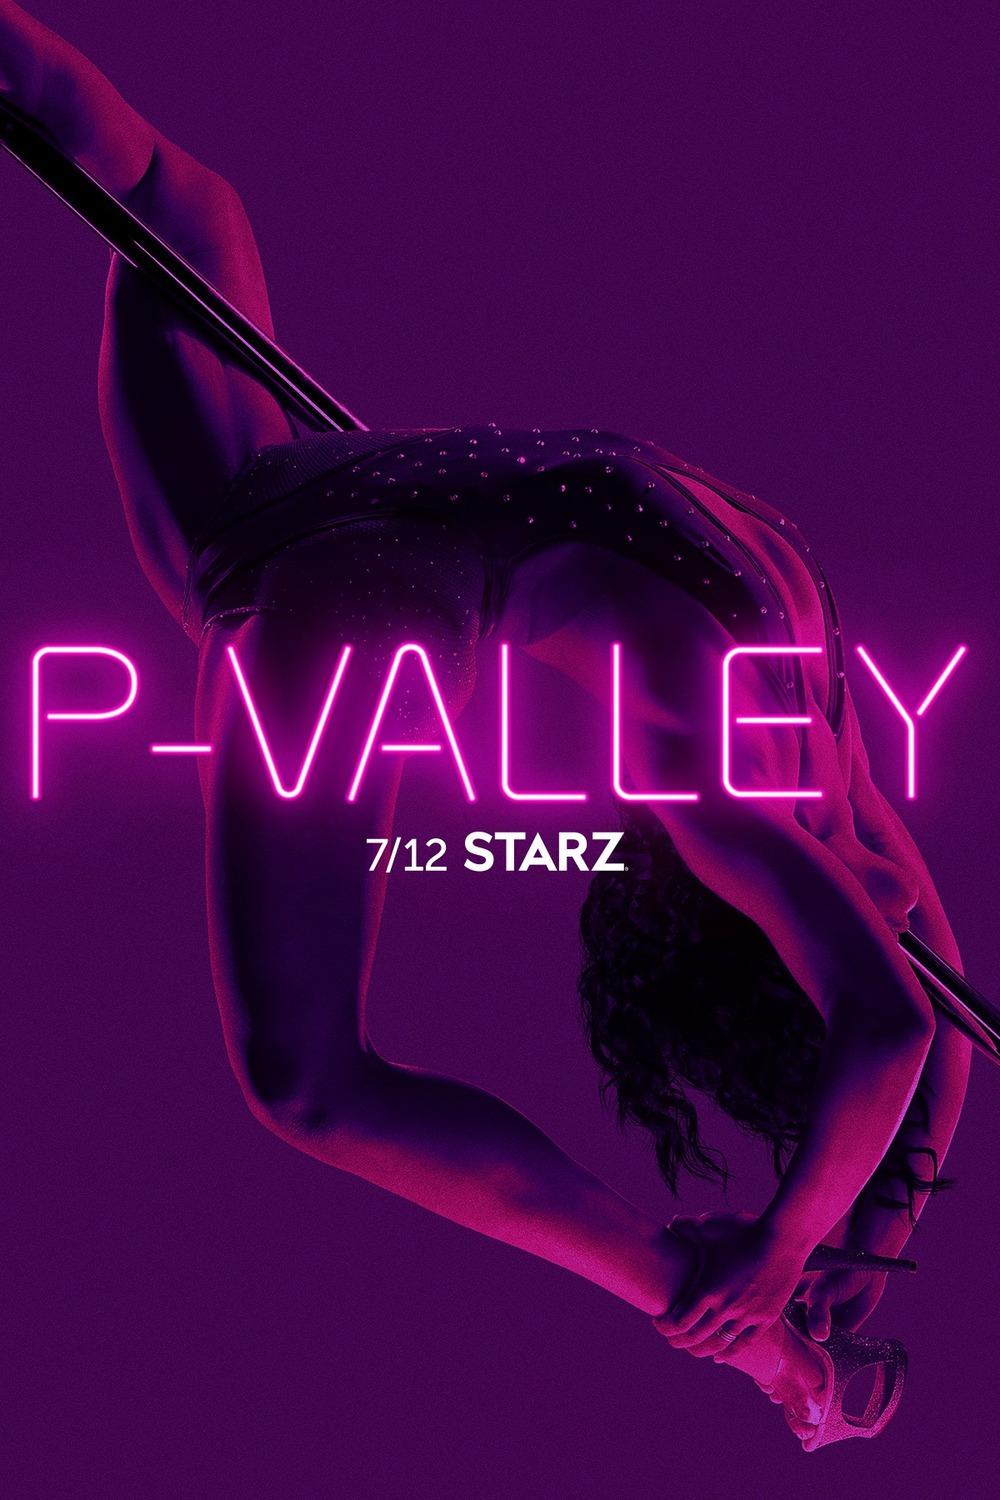 Постер фильма Долина соблазна | P-Valley